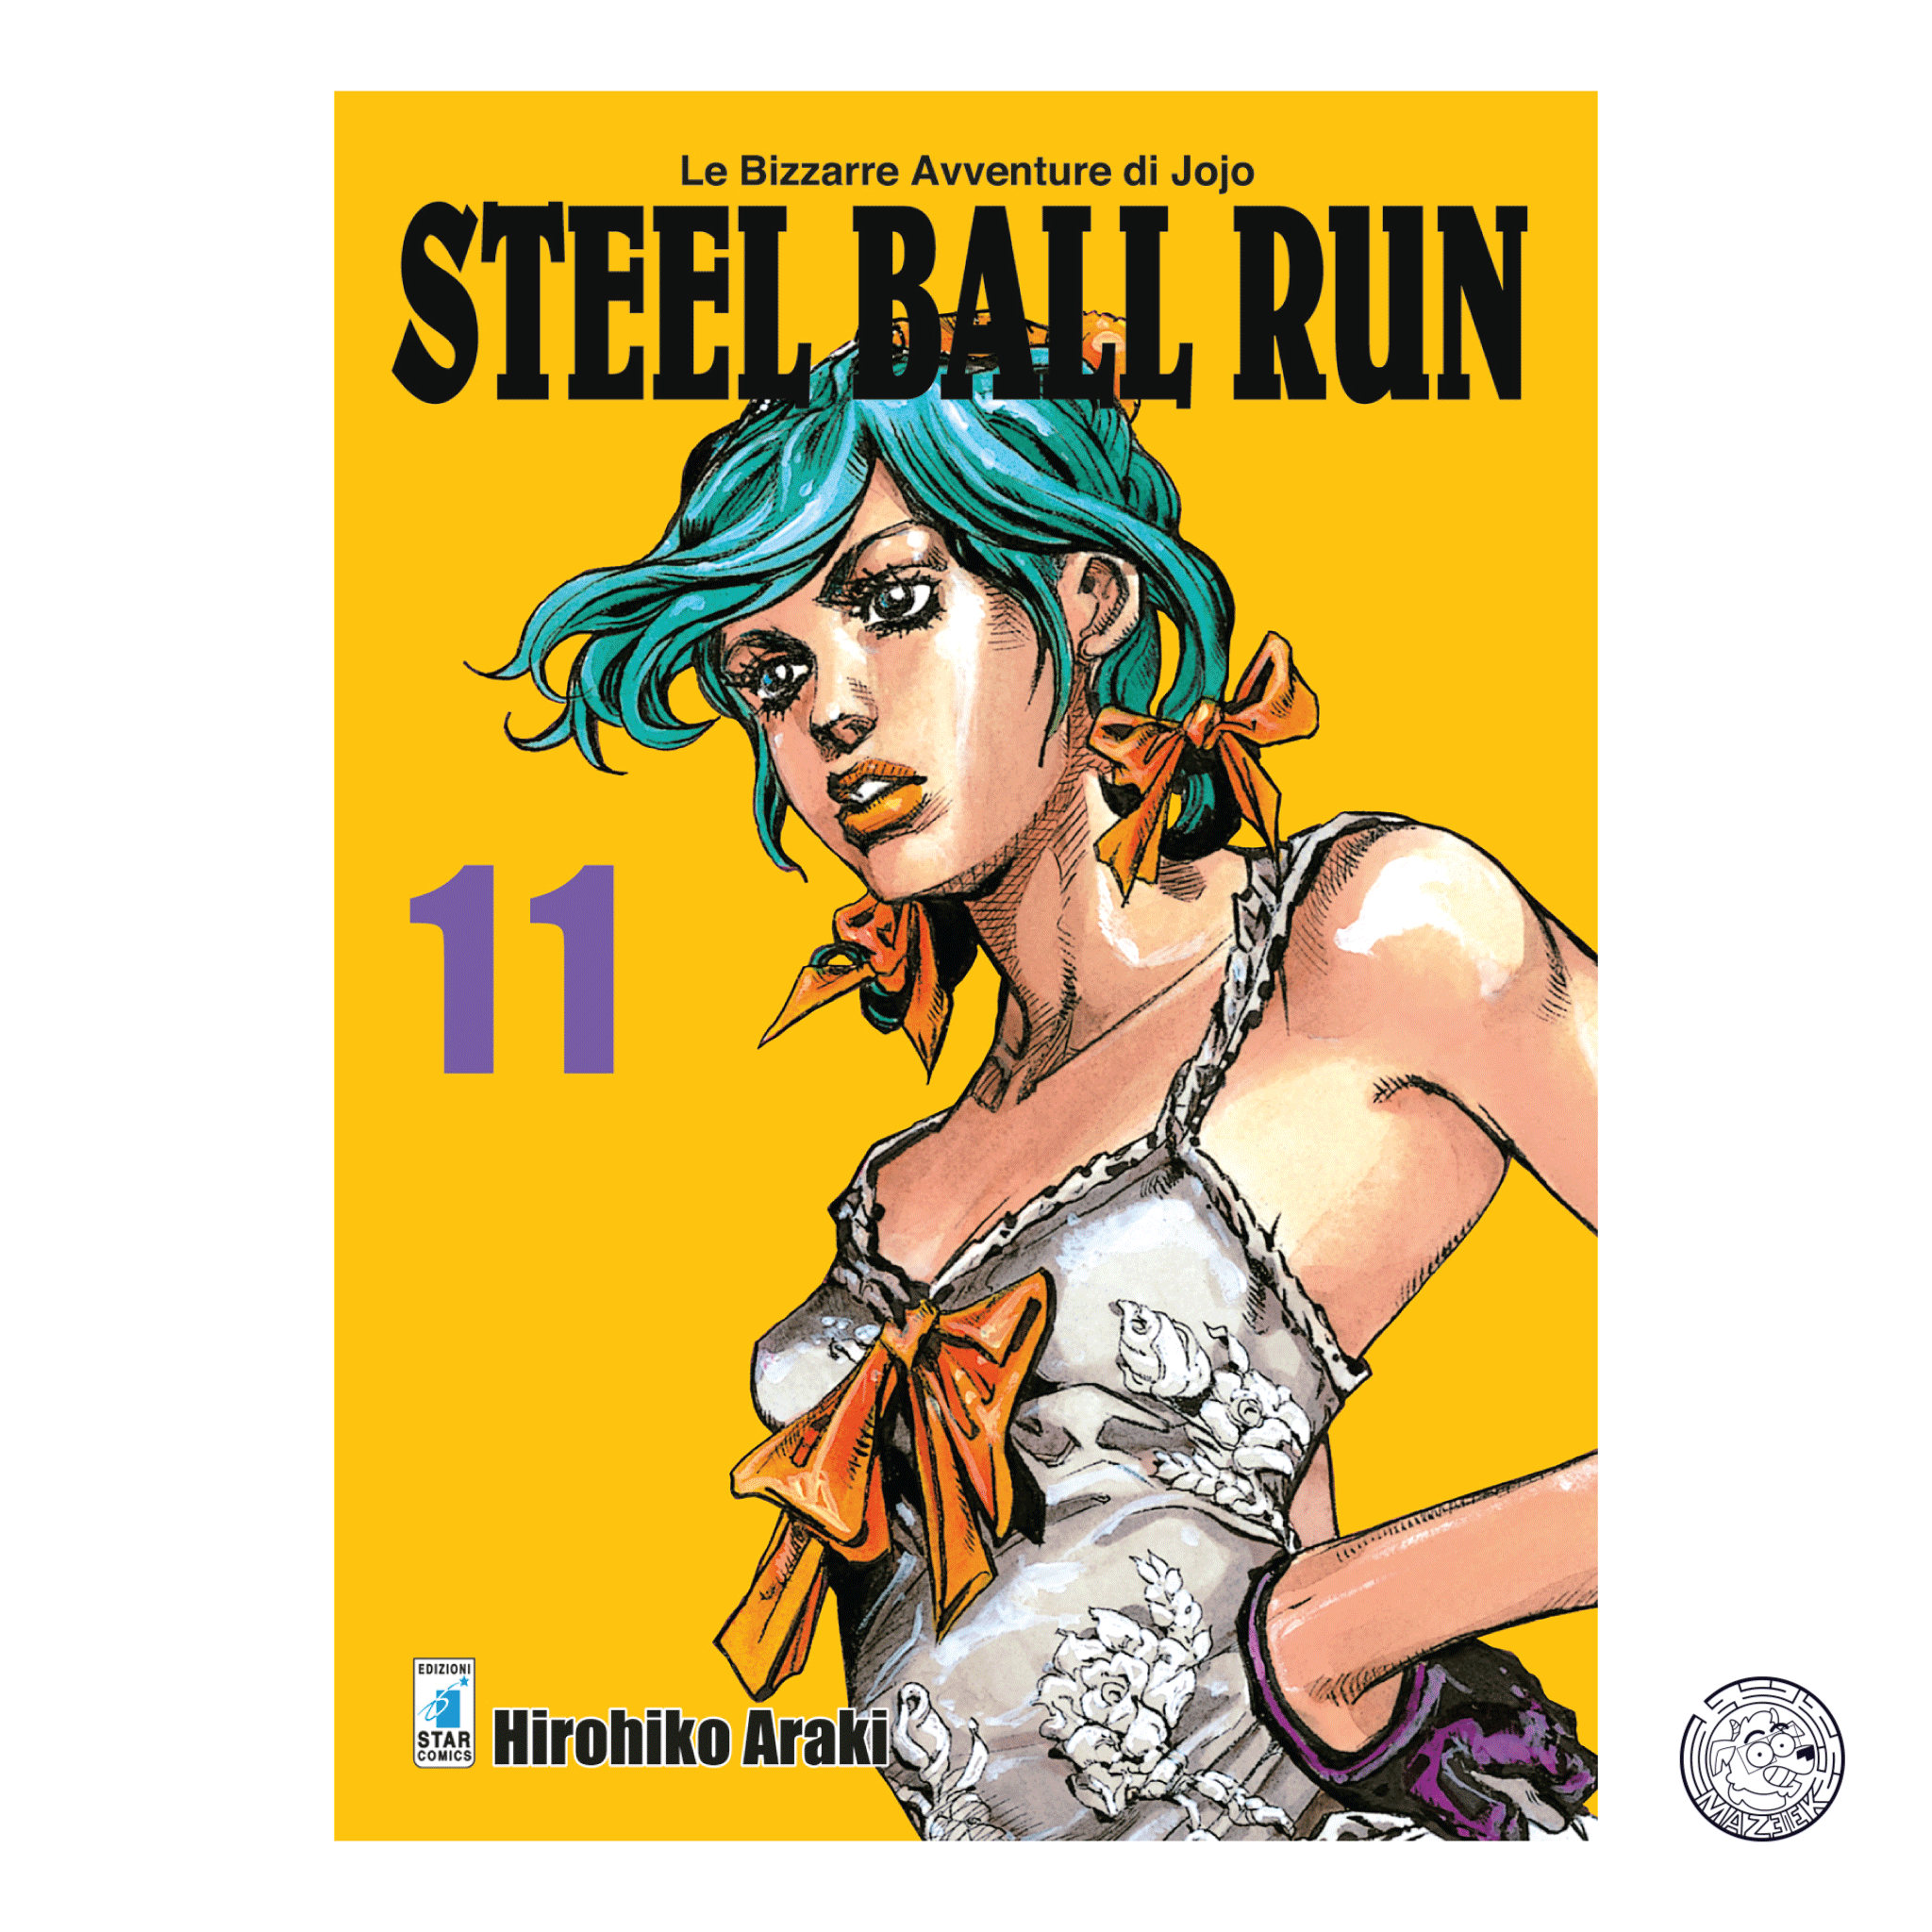 Le Bizzarre Avventure di JoJo: Steel Ball Run 11